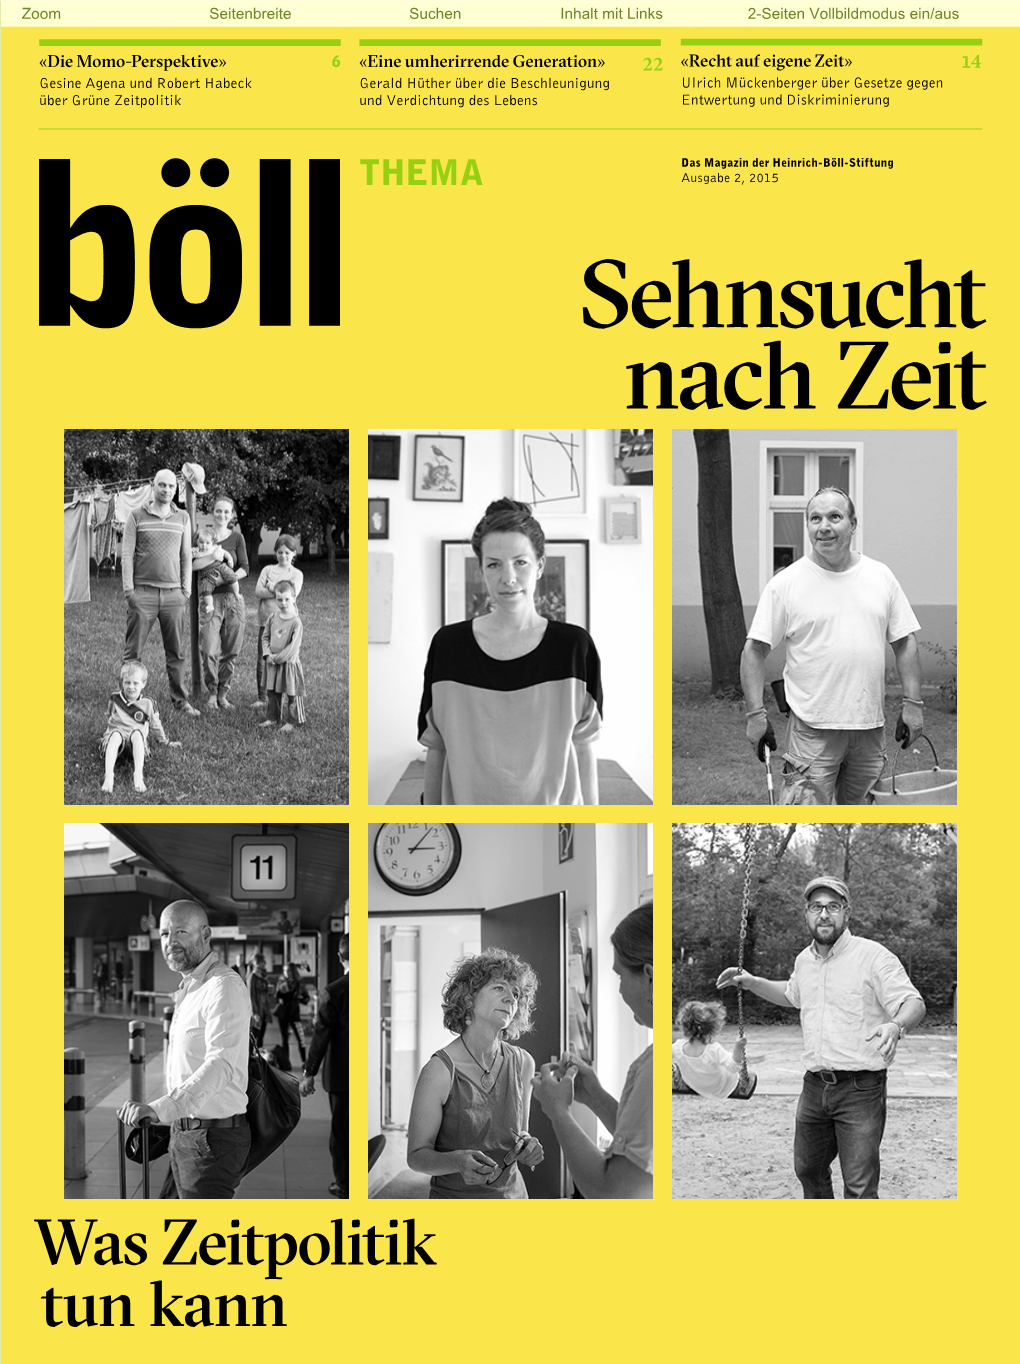 Böll-Stiftung: THEMA 2-2015, Sehnsucht Nach Zeit